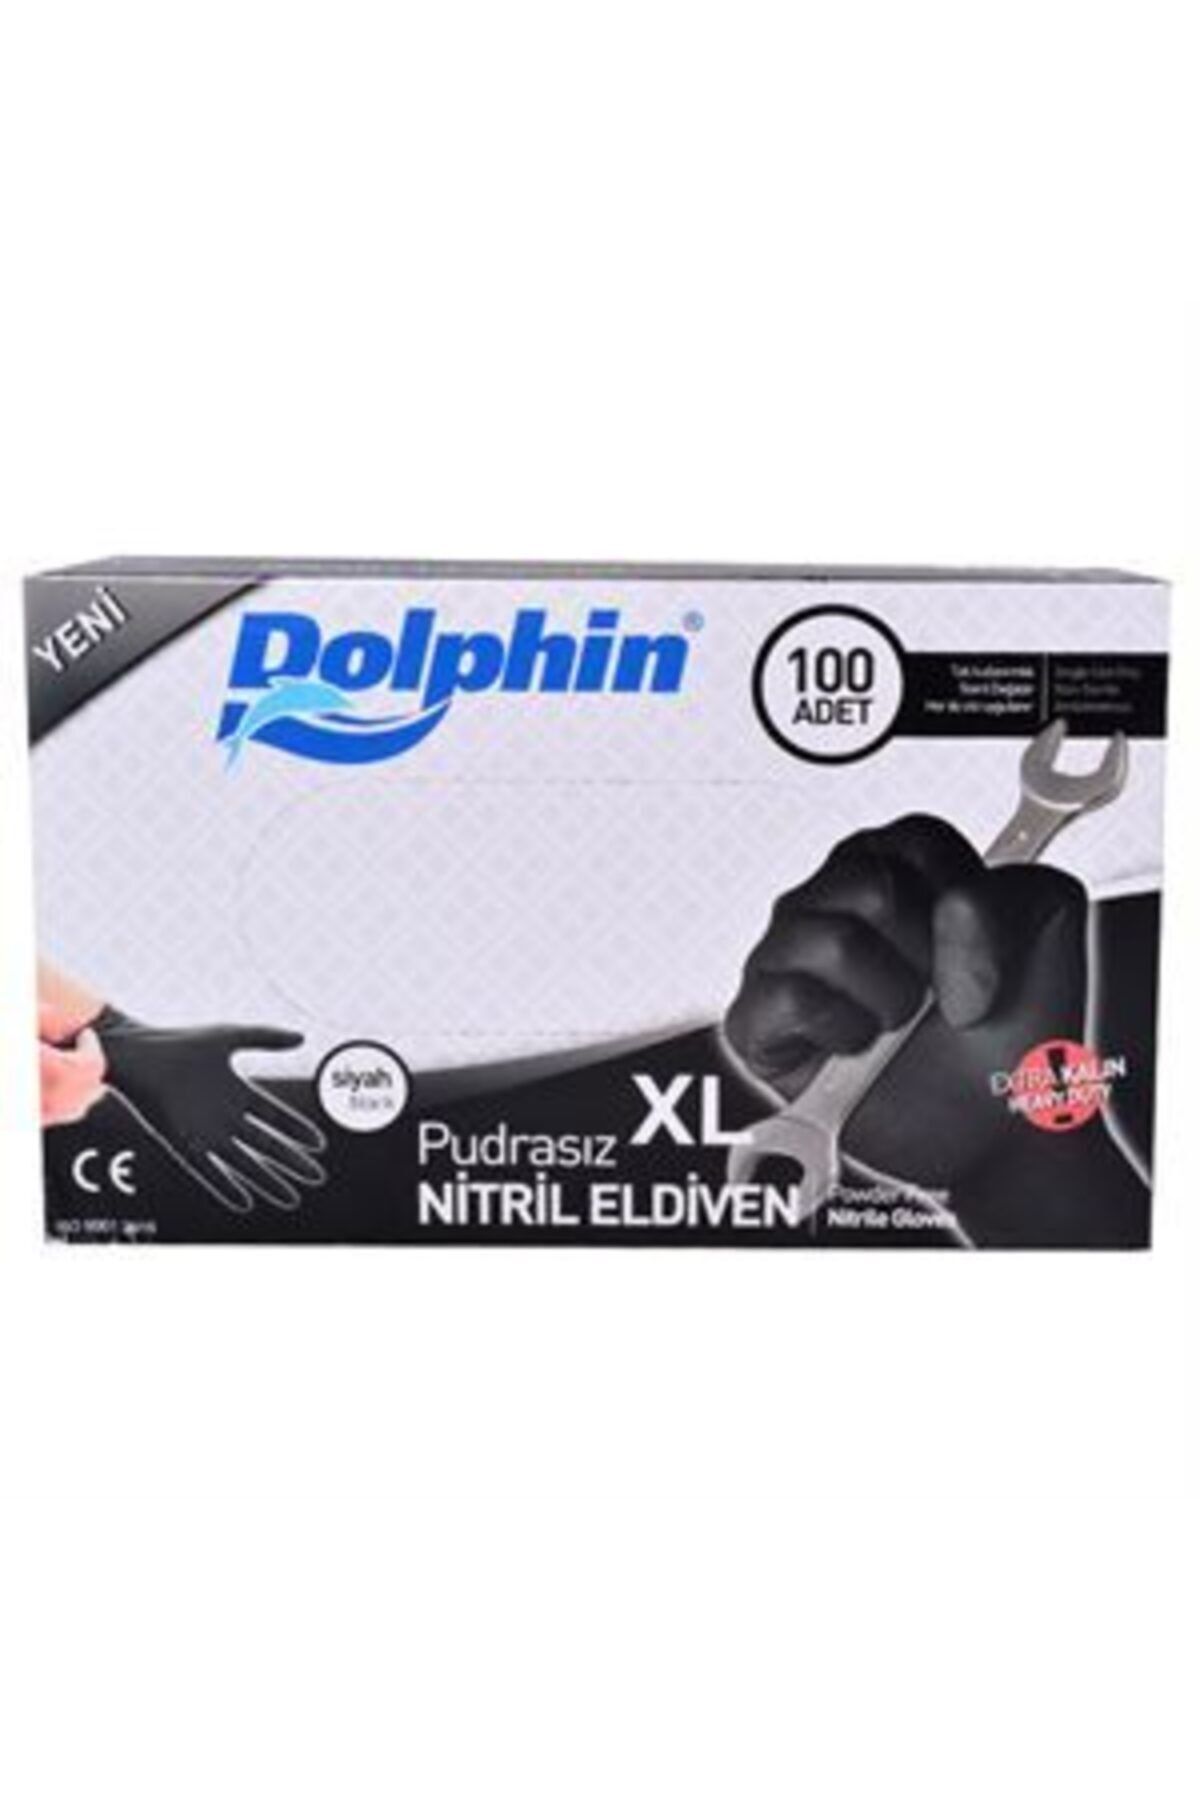 Dolphin Nitril Eldiven Pudrasız Siyah Xl Extra Kalın